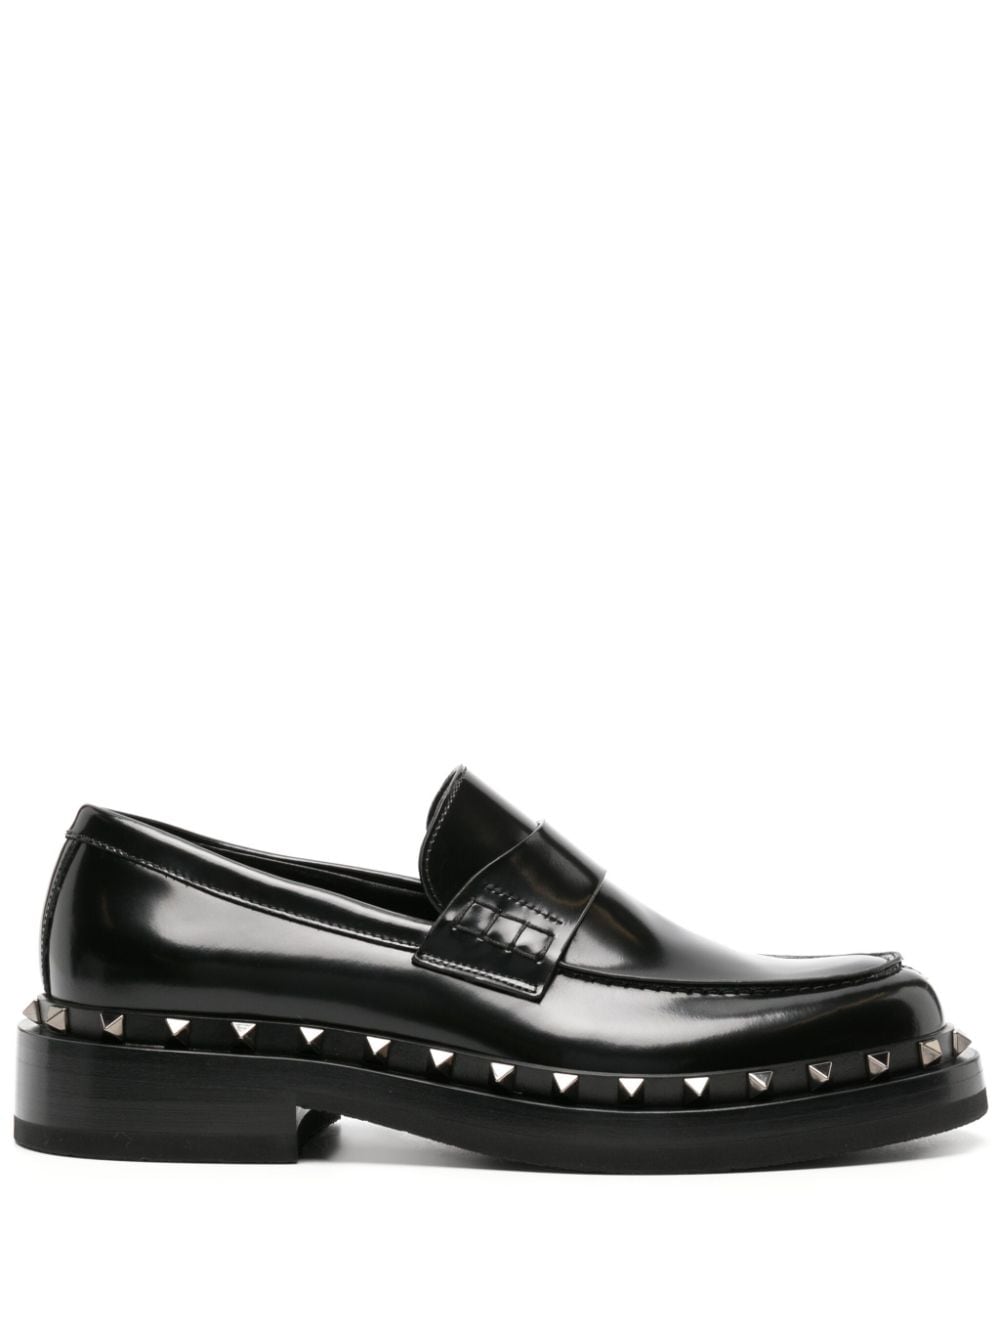 Valentino Garavani Rockstud M-way leather loafers - Black von Valentino Garavani